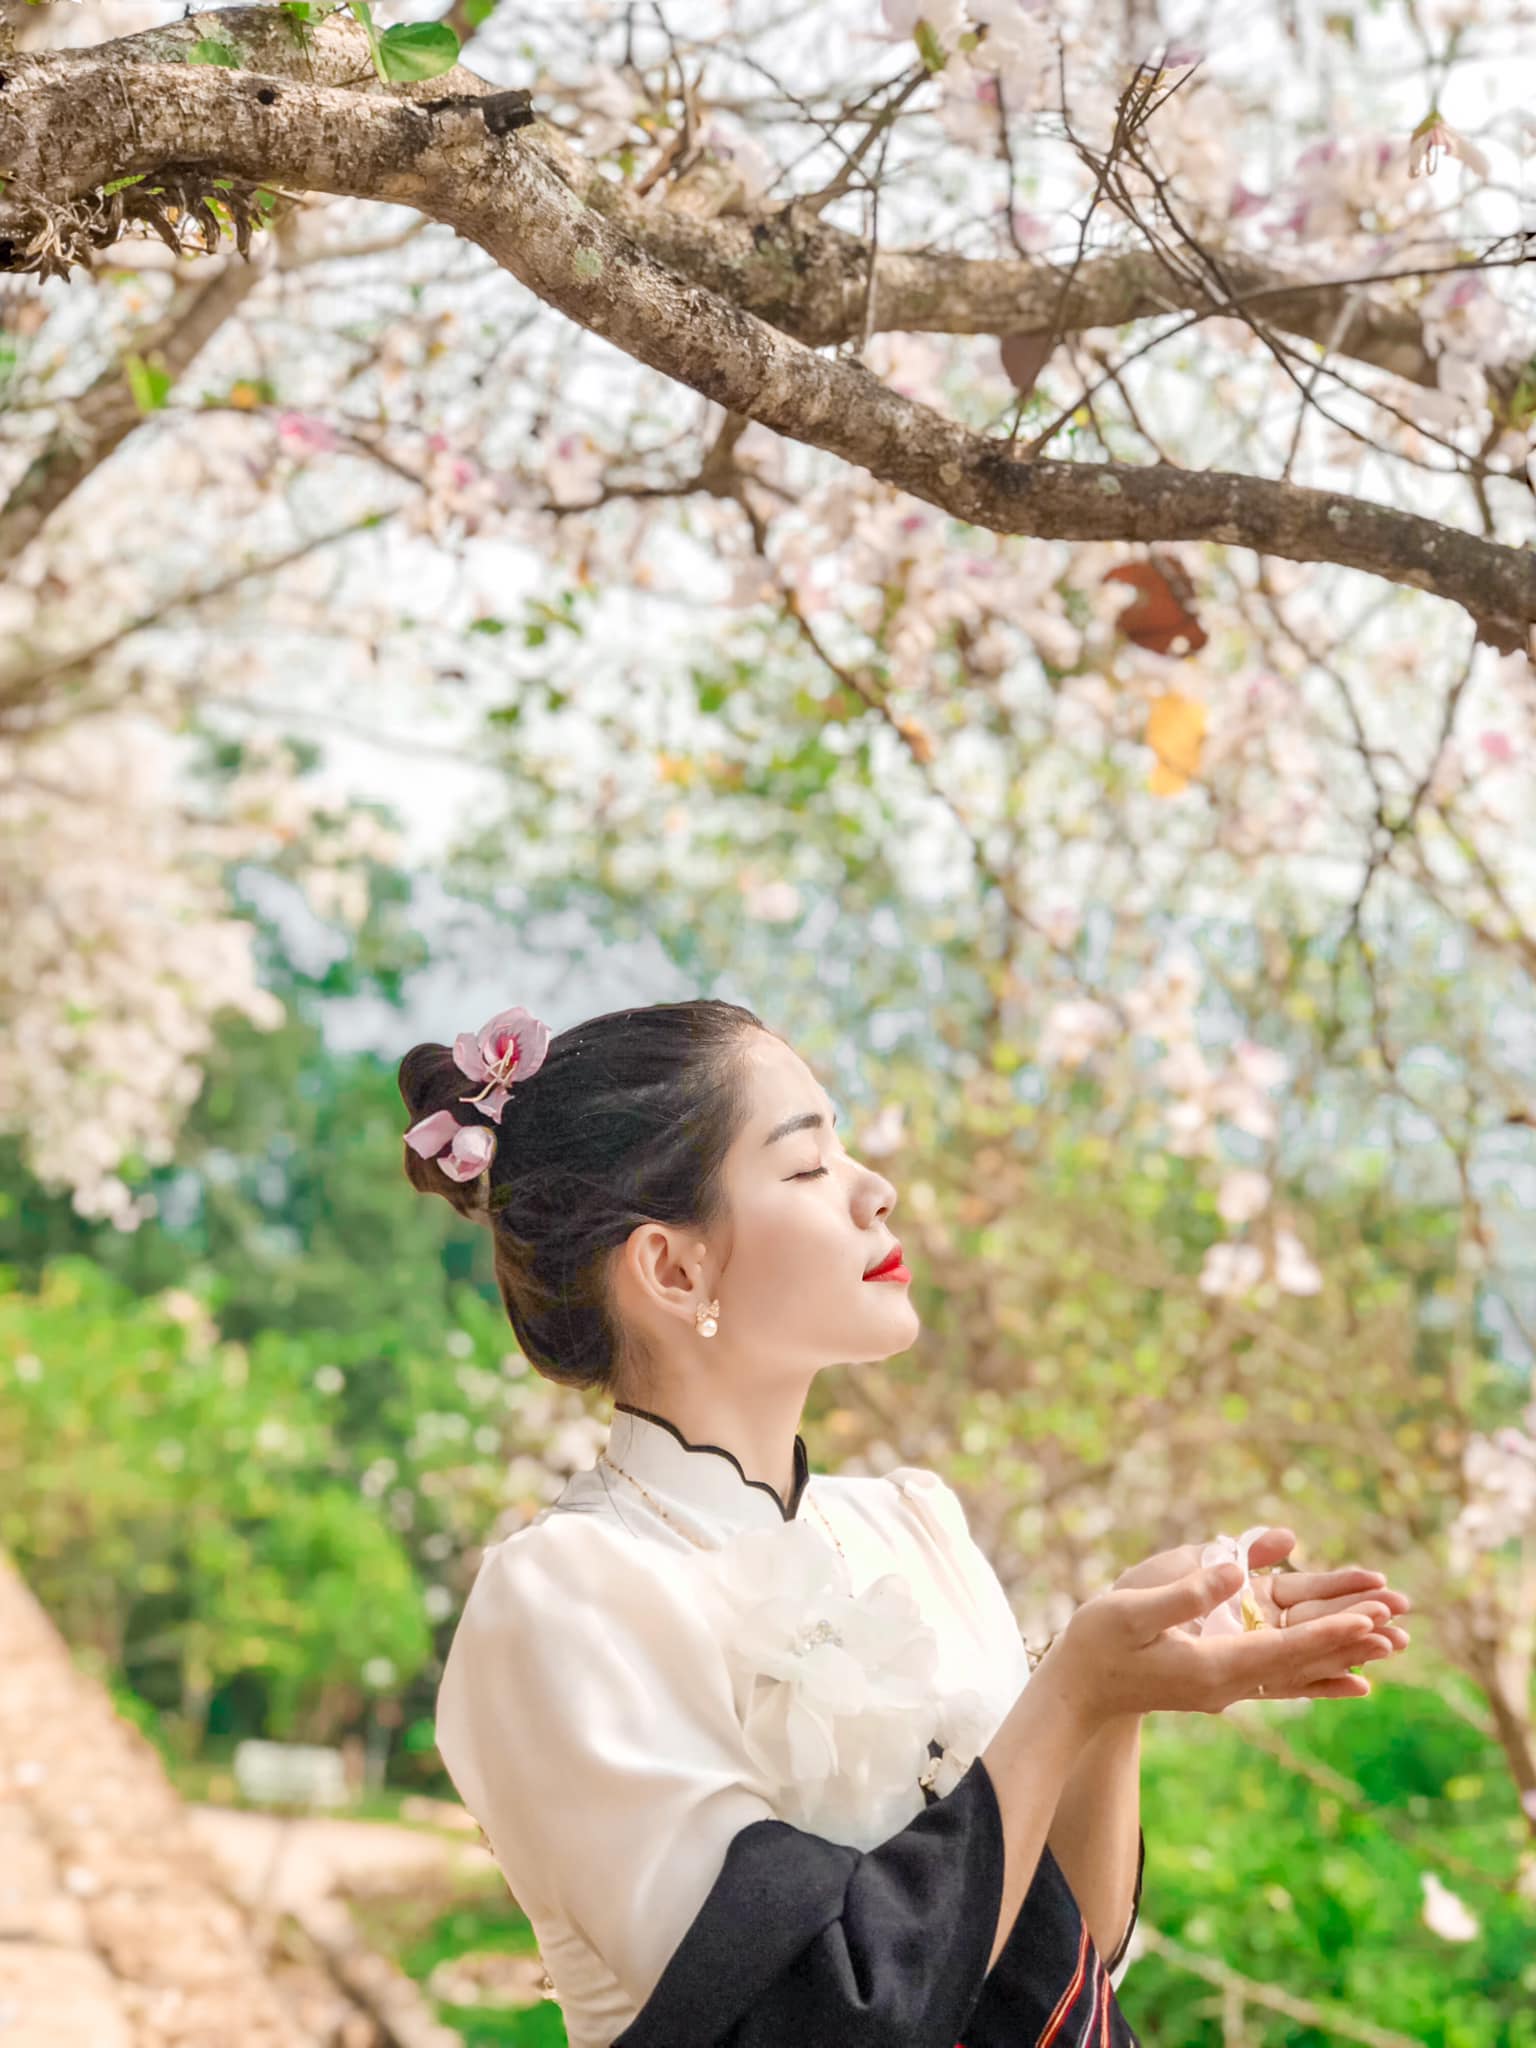 Ngất ngây trước vẻ đẹp Điện Biên mùa hoa ban nở lung linh nhất trong năm - ảnh 24